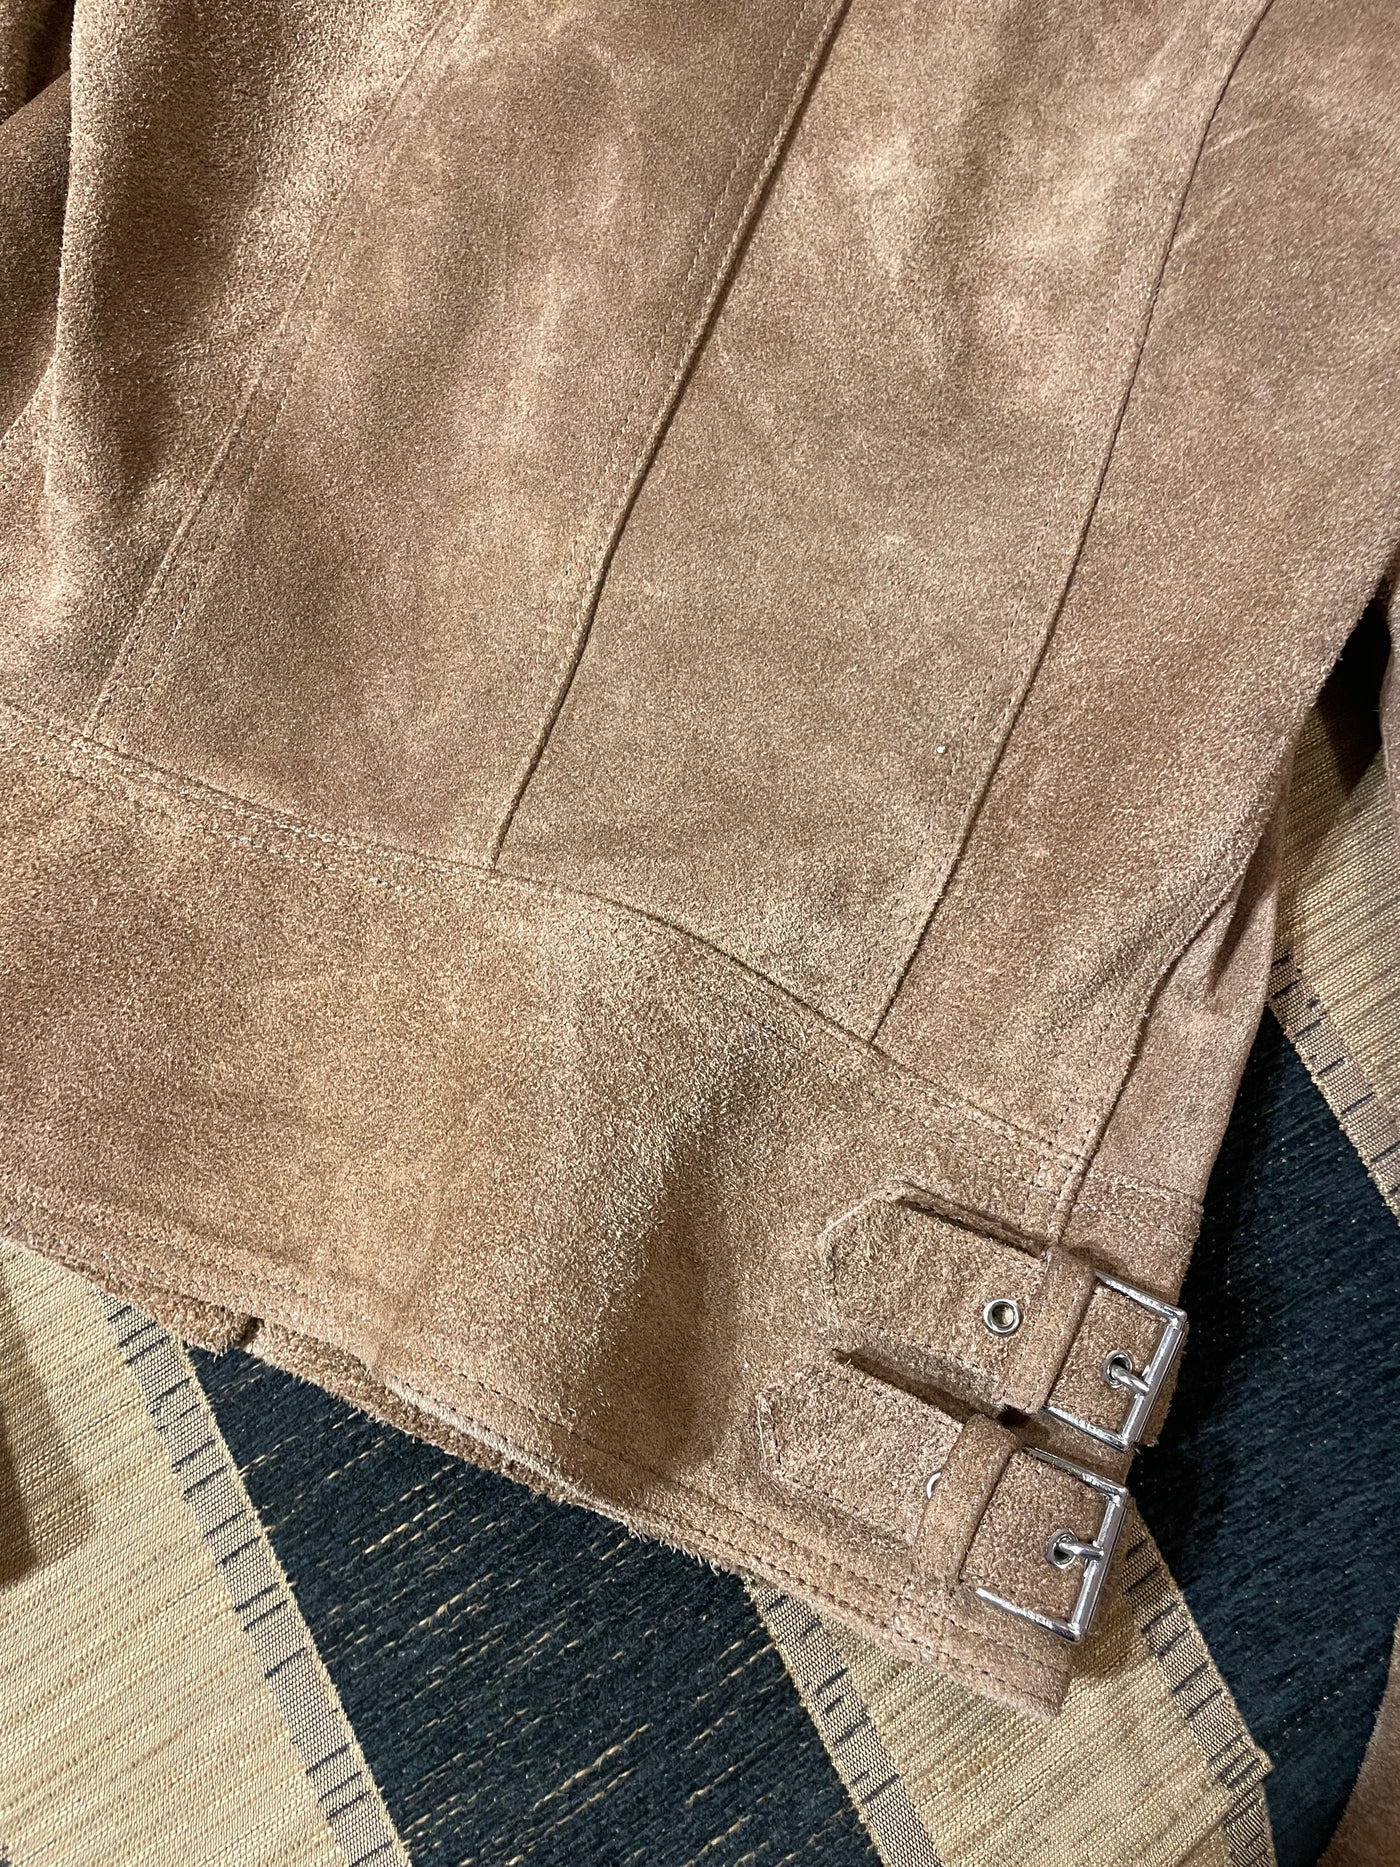 Belstaff suede brown biker jacket